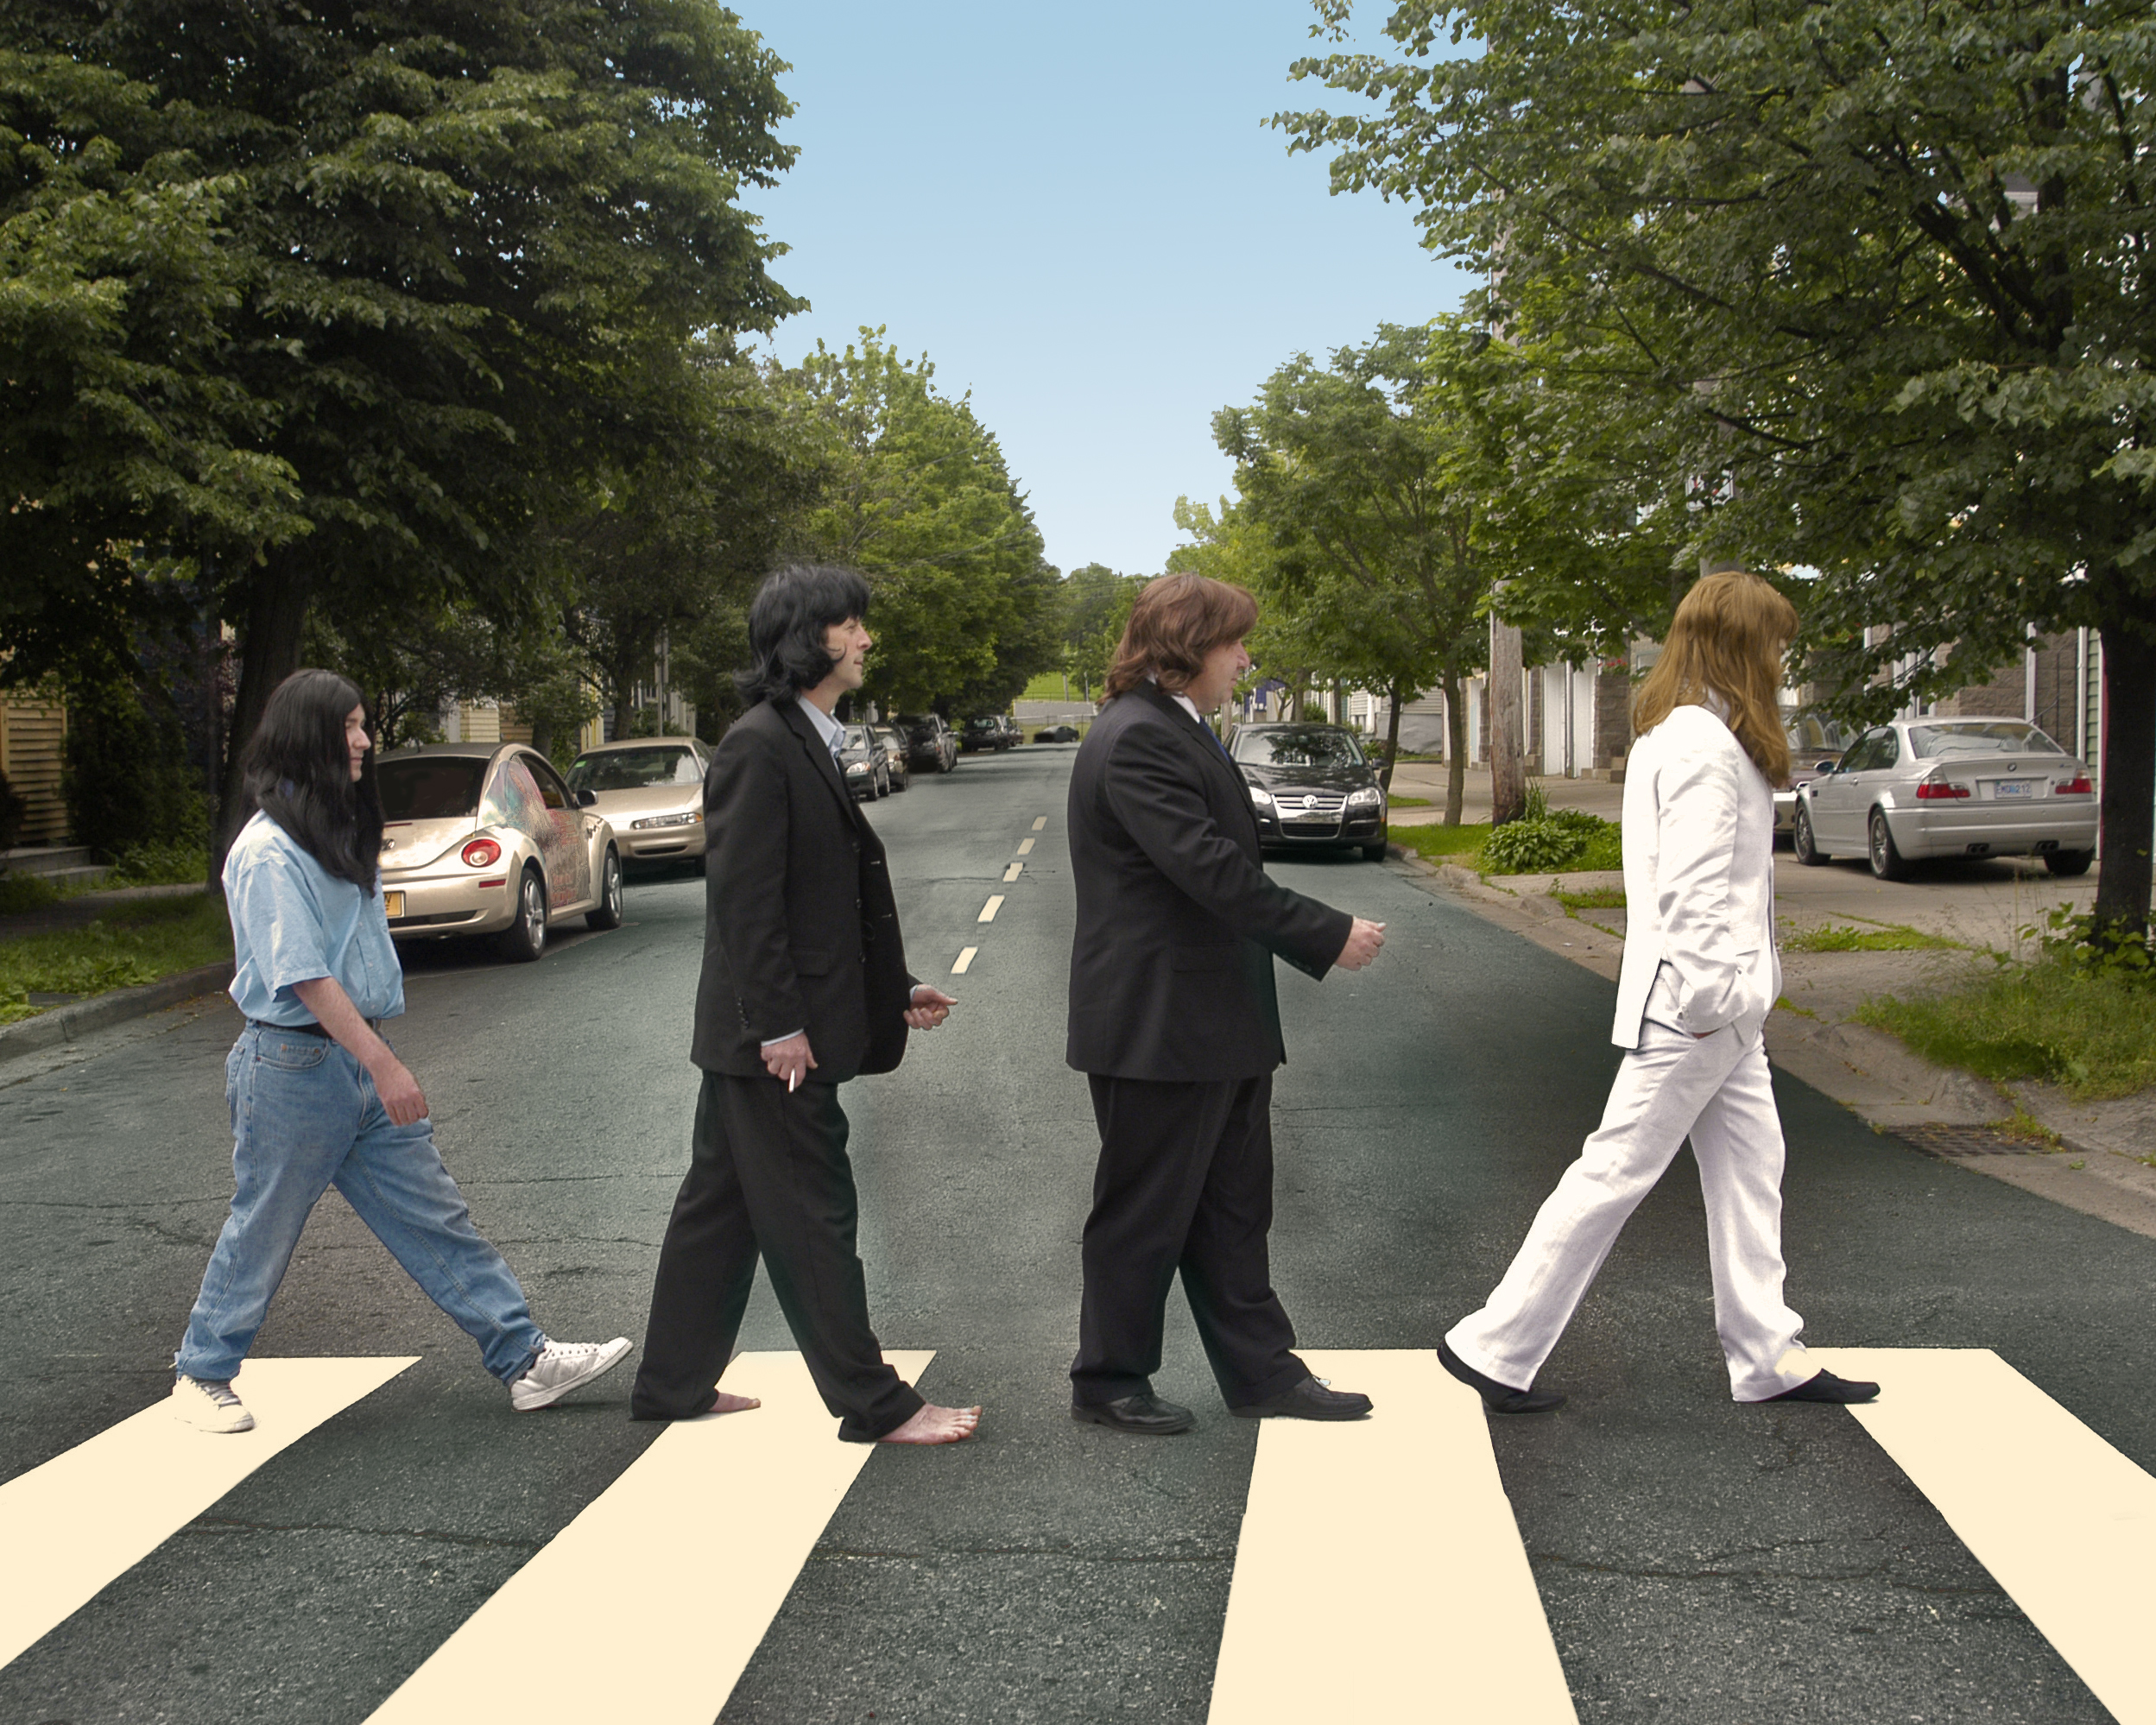 Abbey Road Full Album - Cover3gp mp4 HD video, Abbey Road Full Album - Cove...